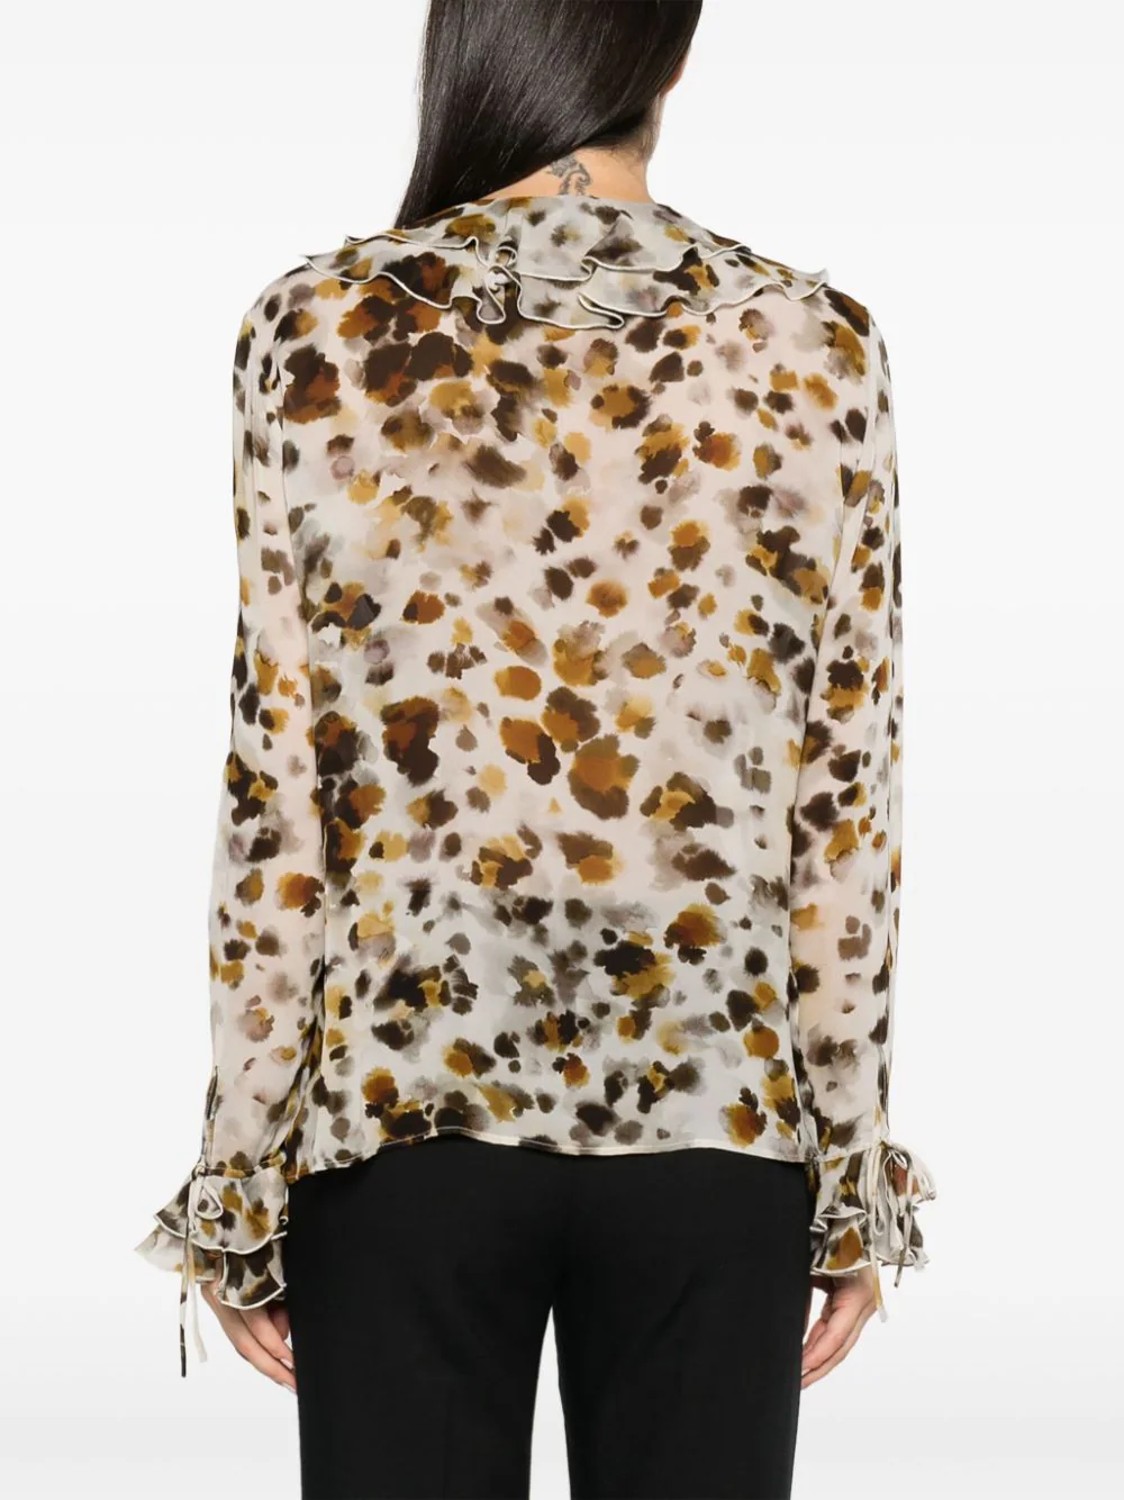 shop MSGM  Camicie: Camicie MSGM, blusa con rouches in georgette, stampa water leopard, manica lunga, scollo a V, fit regolare.

Composizione: 100% viscosa. number 2678